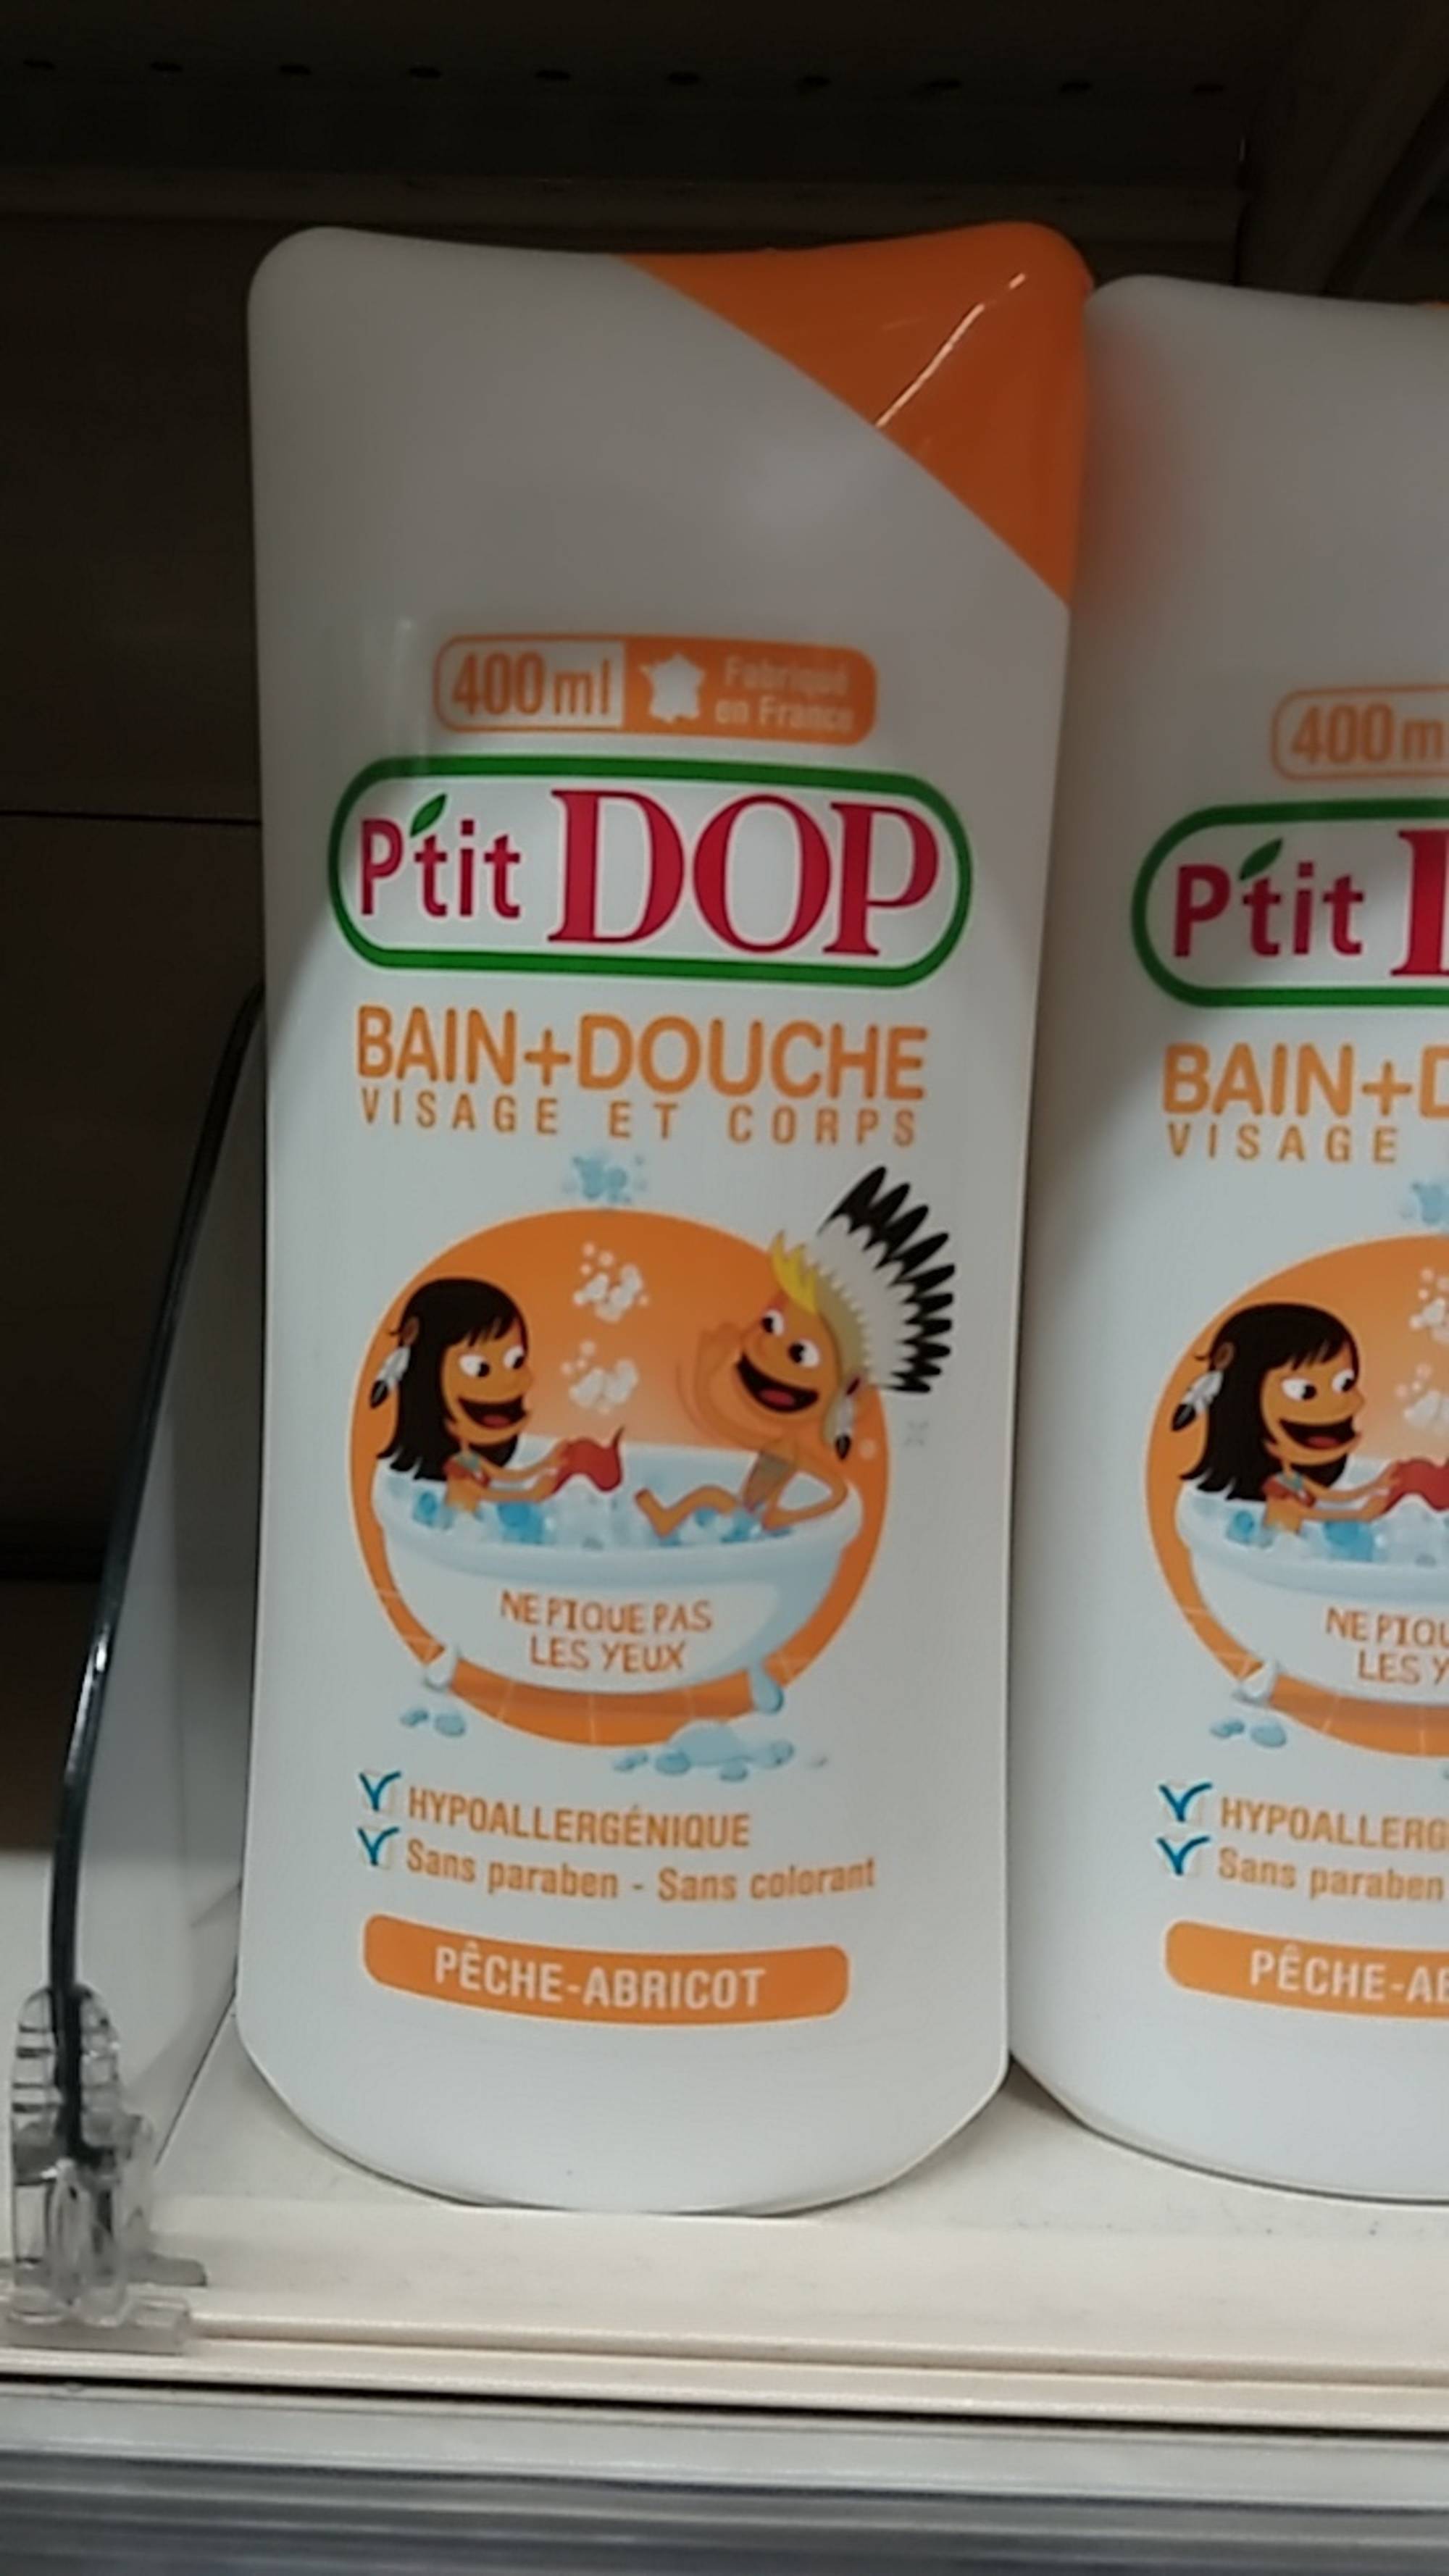 P'TIT DOP - Bain + douche -visage et corps